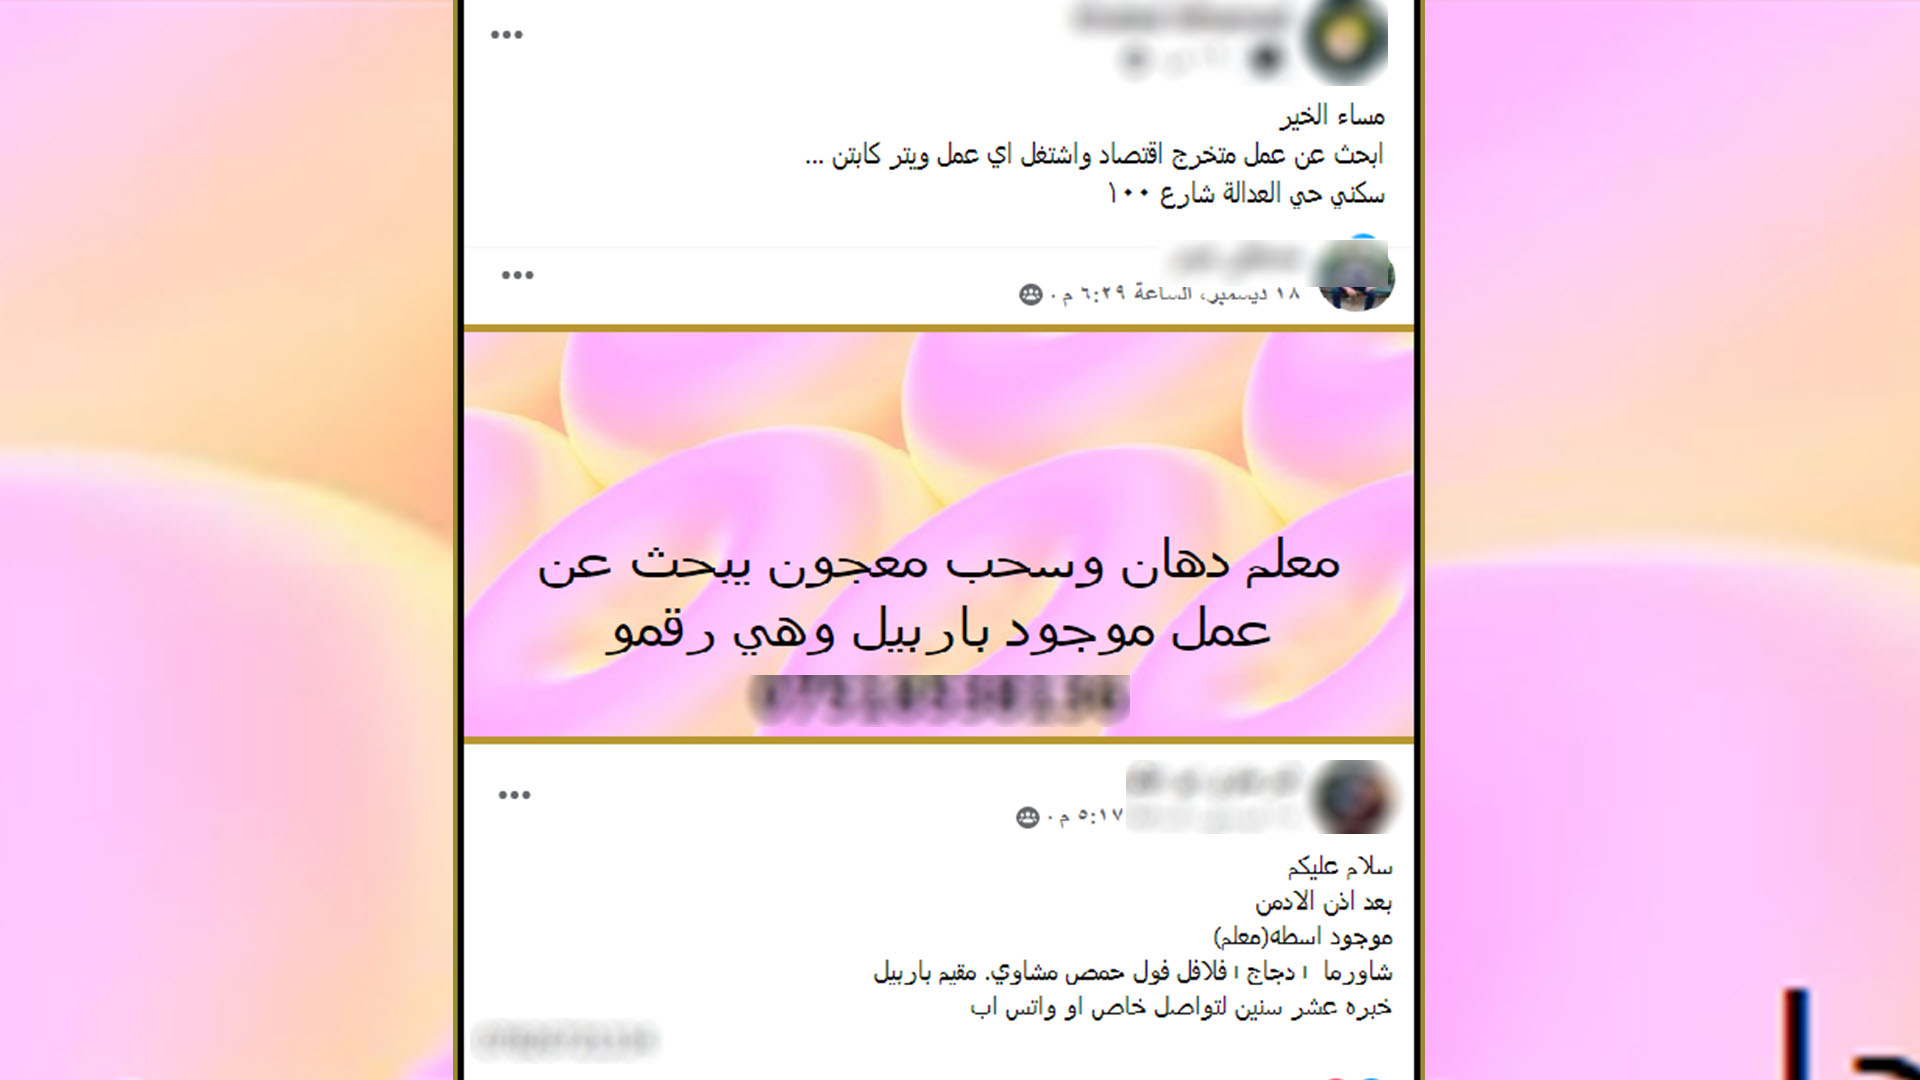 نماذج من منشورات لسوريين على المجموعات والصفحات في موقع "فيسبوك" يبحثون عن العمل في أربيل- لقطات شاشة من مجموعة على موقع فيسبوك تحمل اسم "السوريين في اربيل"